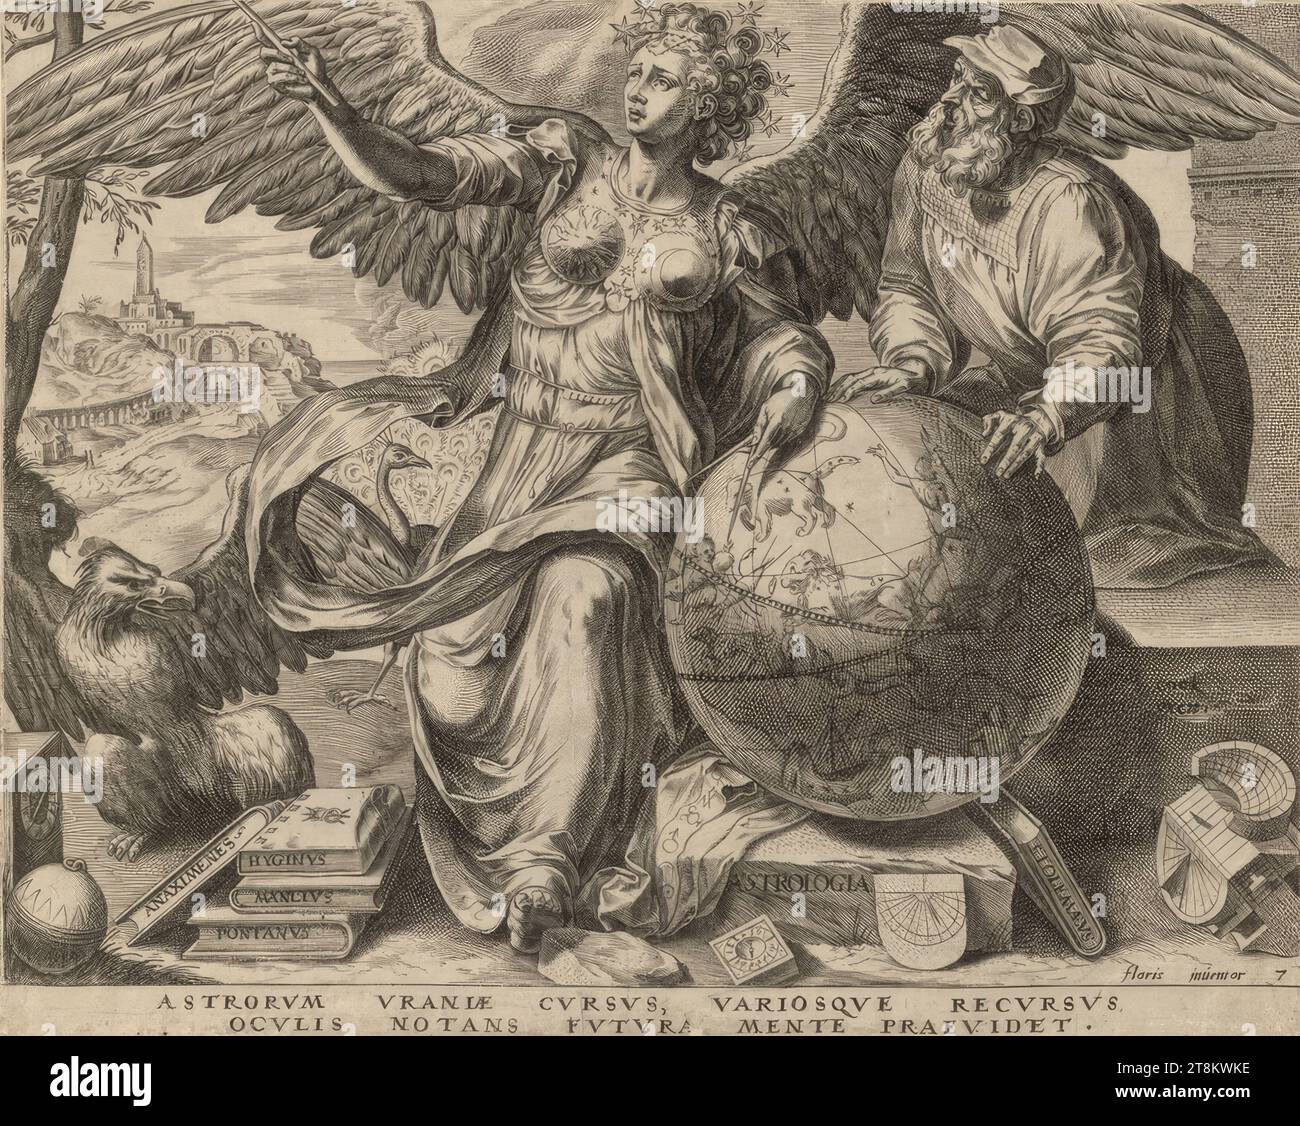 Dalla serie "le sette Arti Liberali": Astrologia, Astrologia, le sette Arti Liberali, 1565, stampa, incisione su copperplate, foglio: 22,7 x 28,3 cm, destra. 'ASTROLOGIA' in stampa Foto Stock